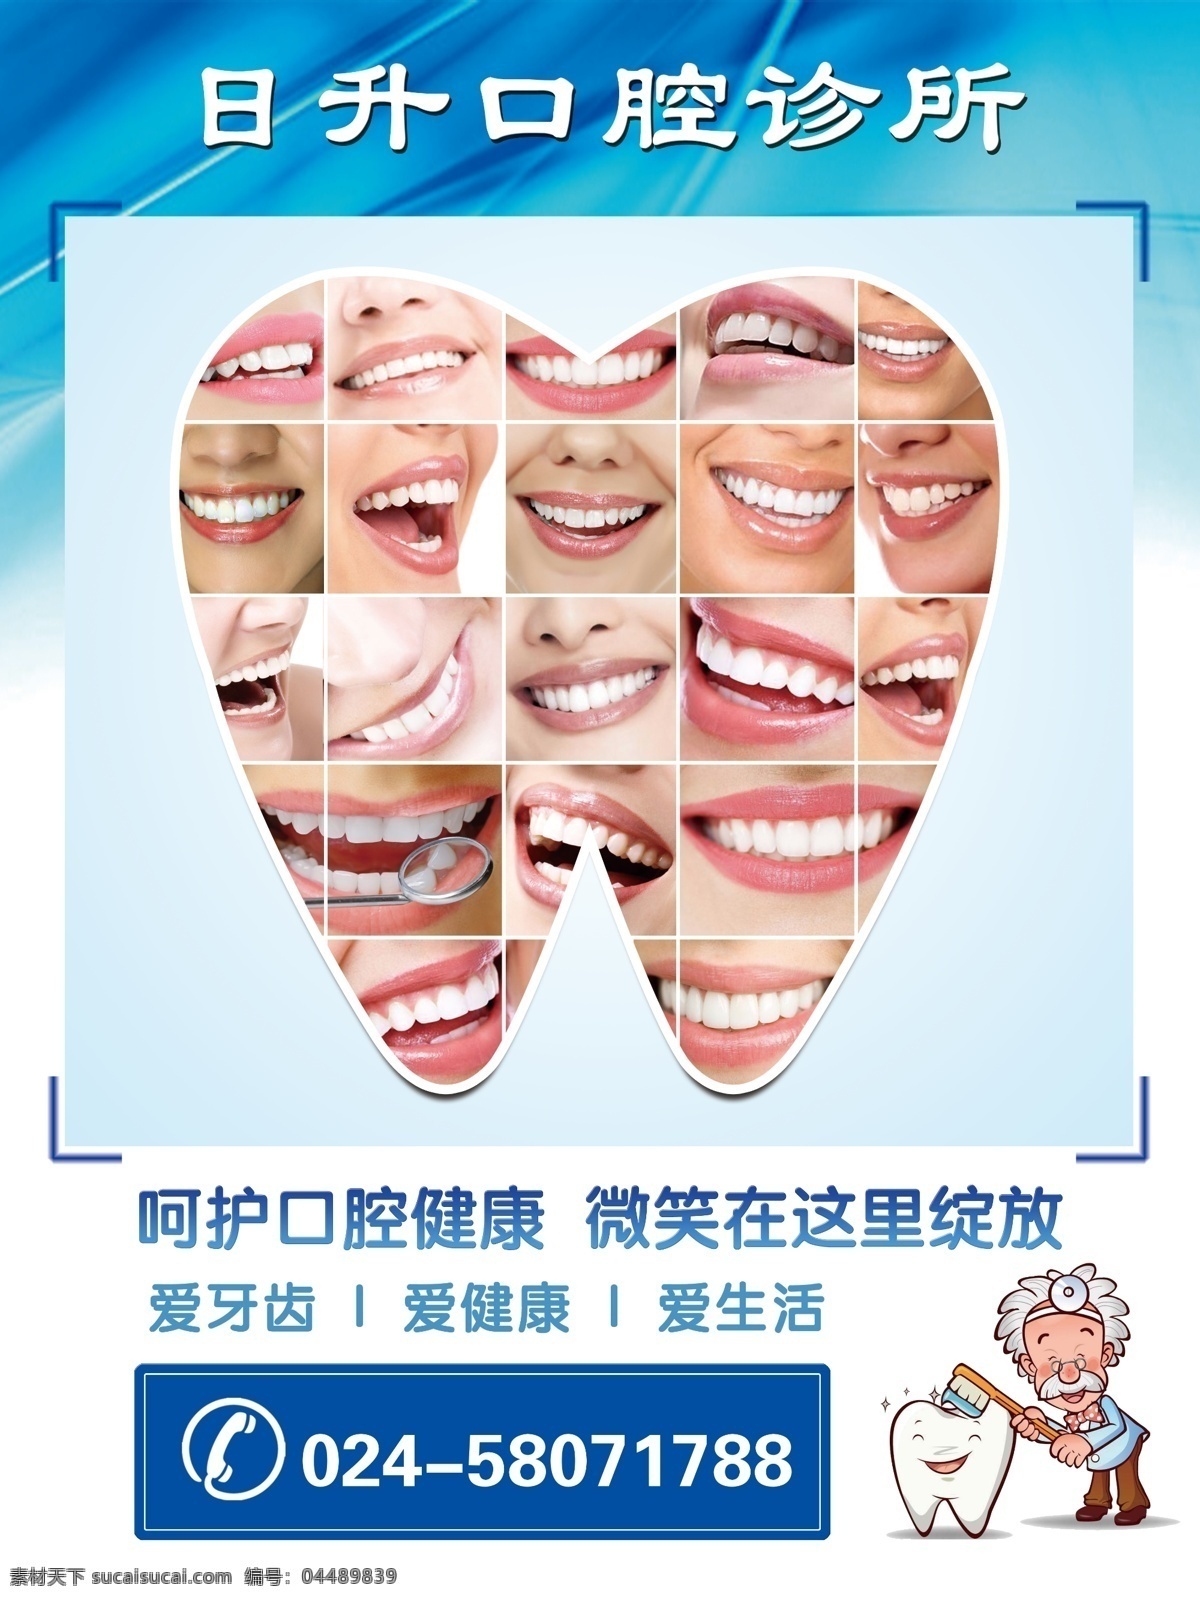 牙科图片 牙科 口腔 橱窗 玻璃贴 窗帘画面 蓝色 牙医 医院 诊所 看牙齿 展板模板